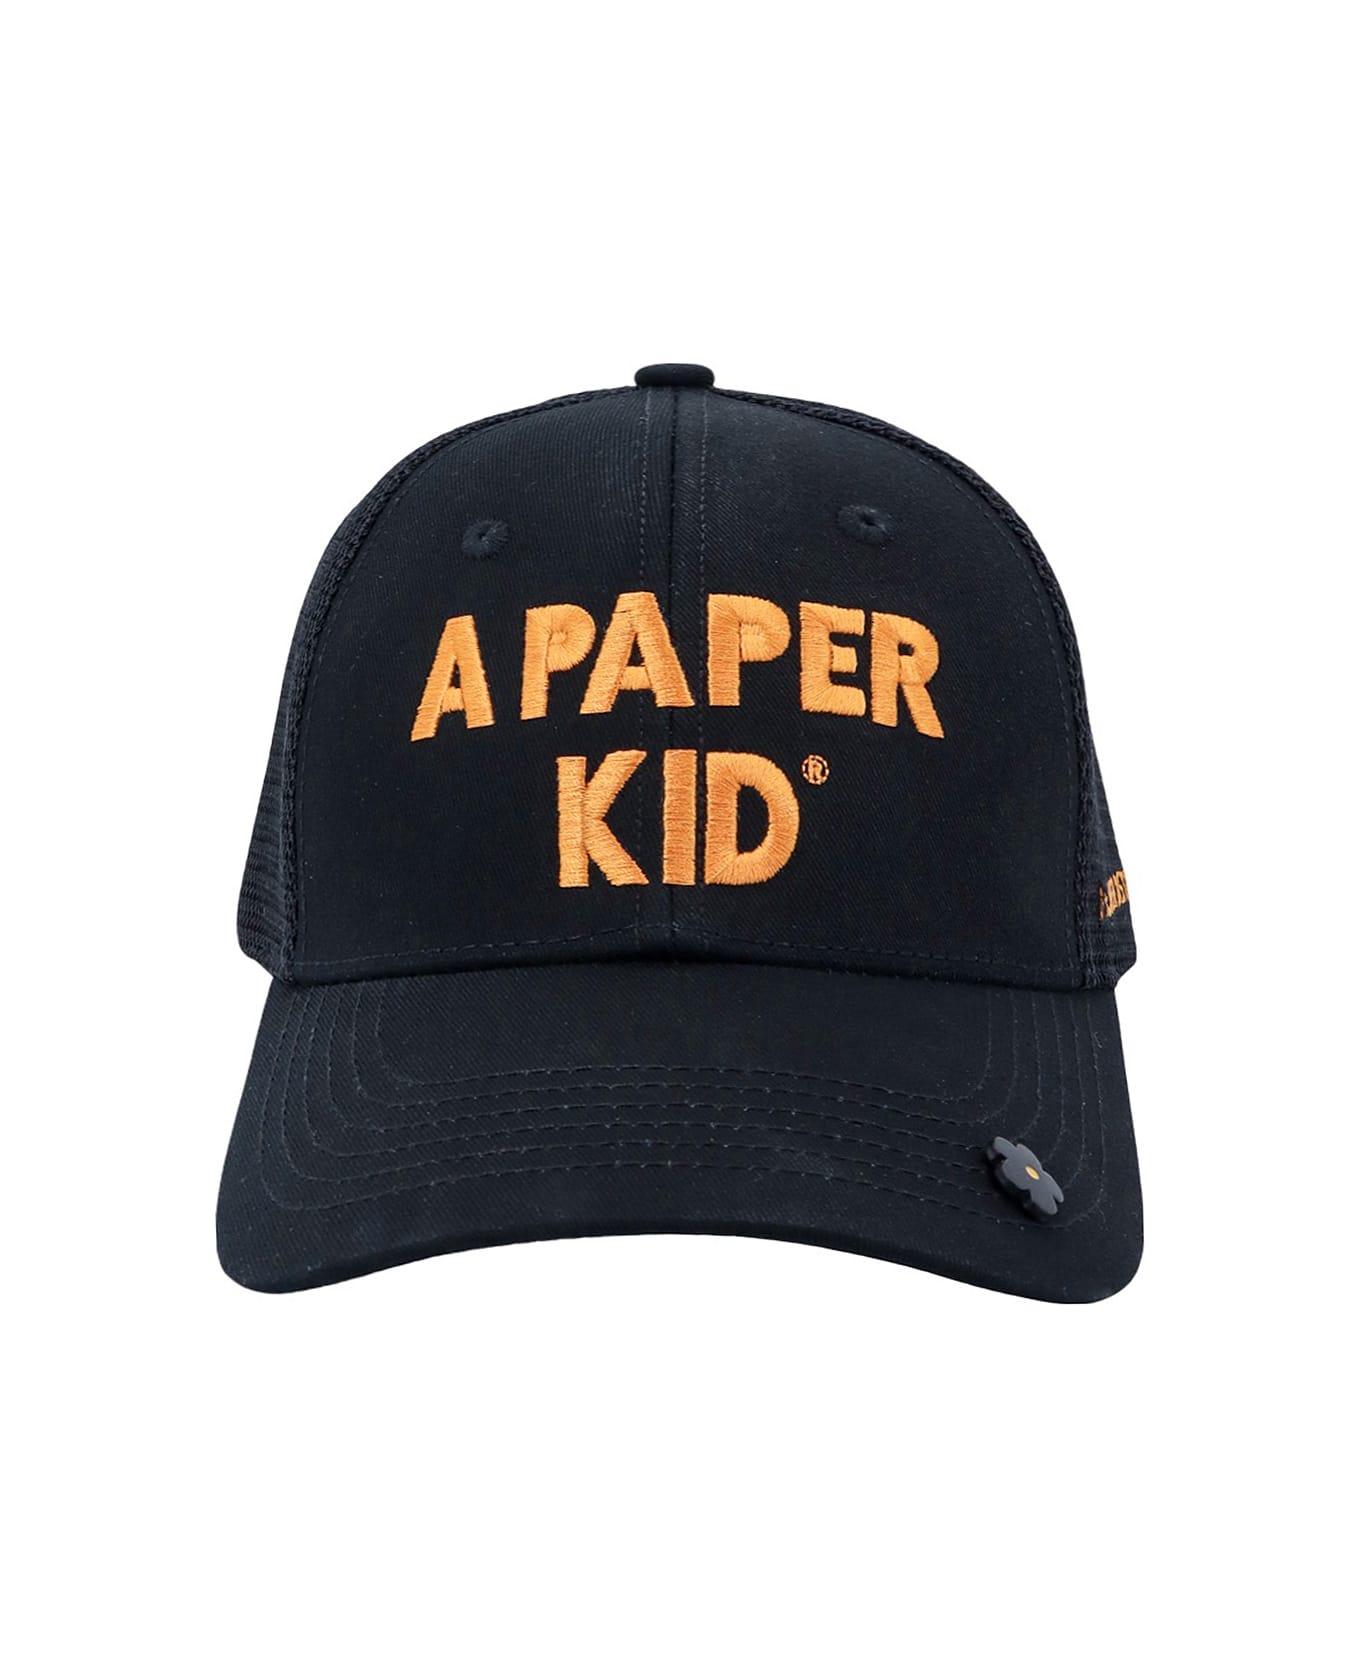 A Paper Kid Hat - Black